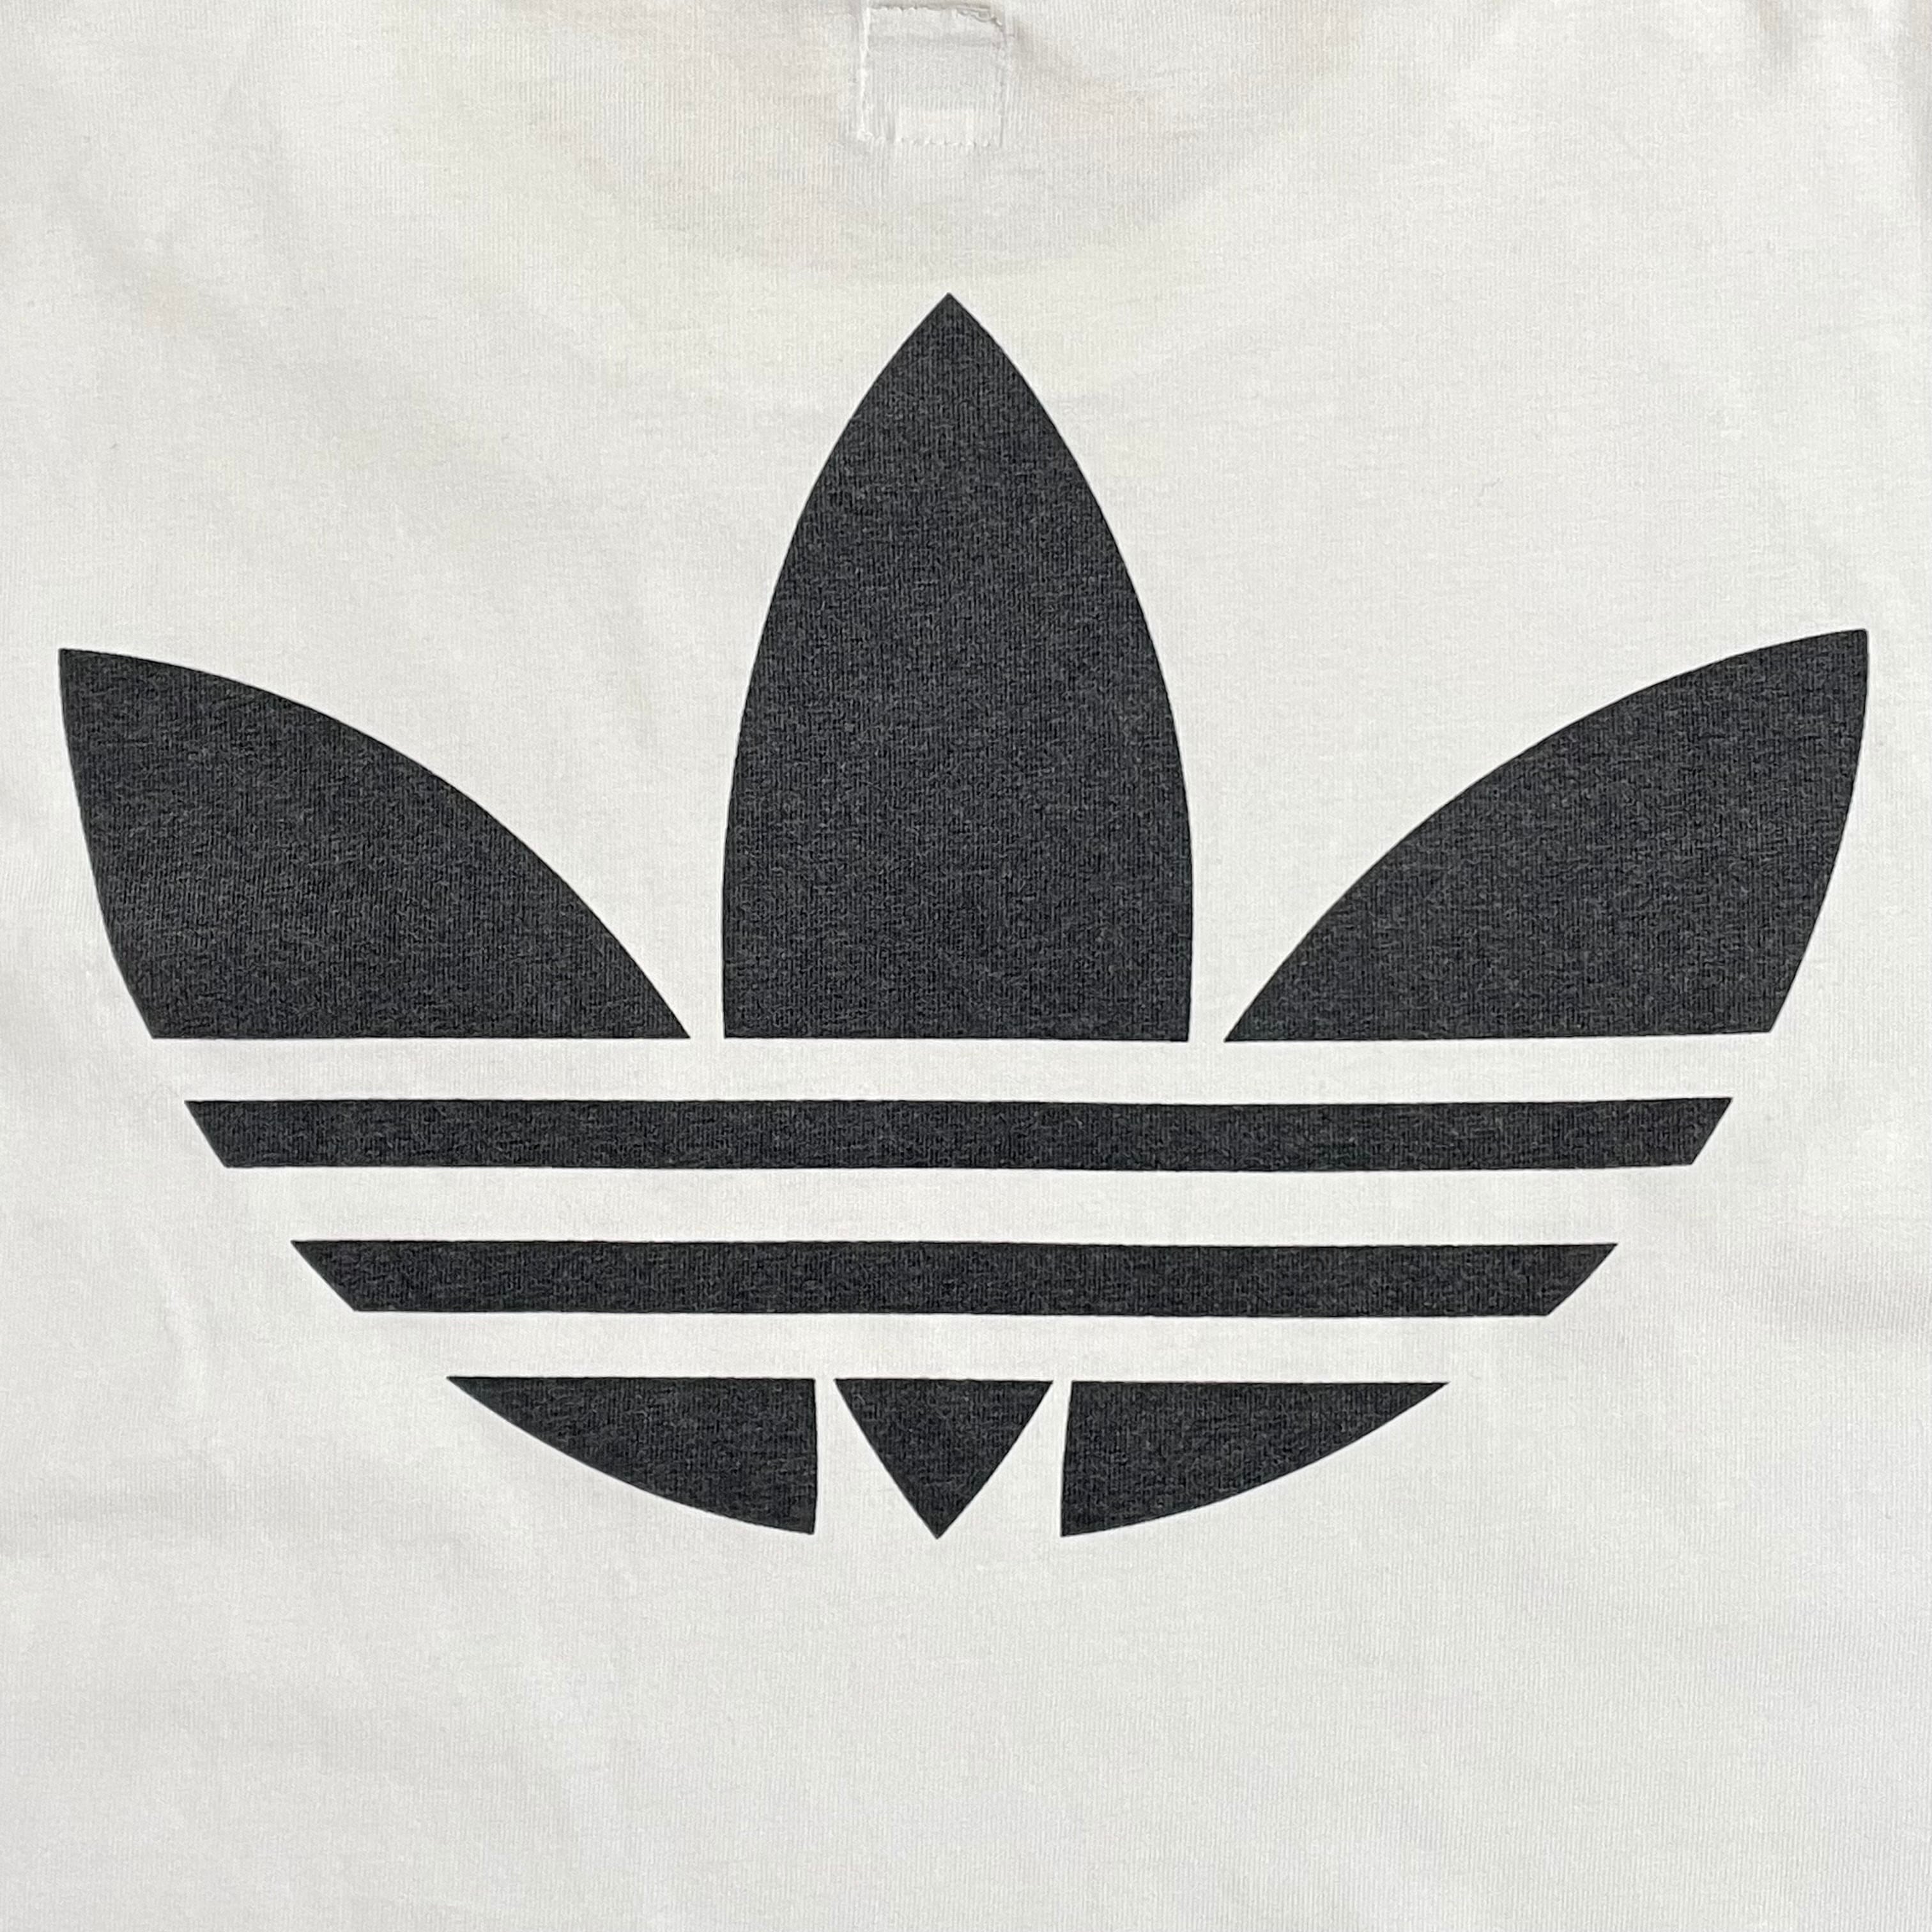 Adidas アディダス トレフォイル ロゴ Tシャツ ワンポイント プリント